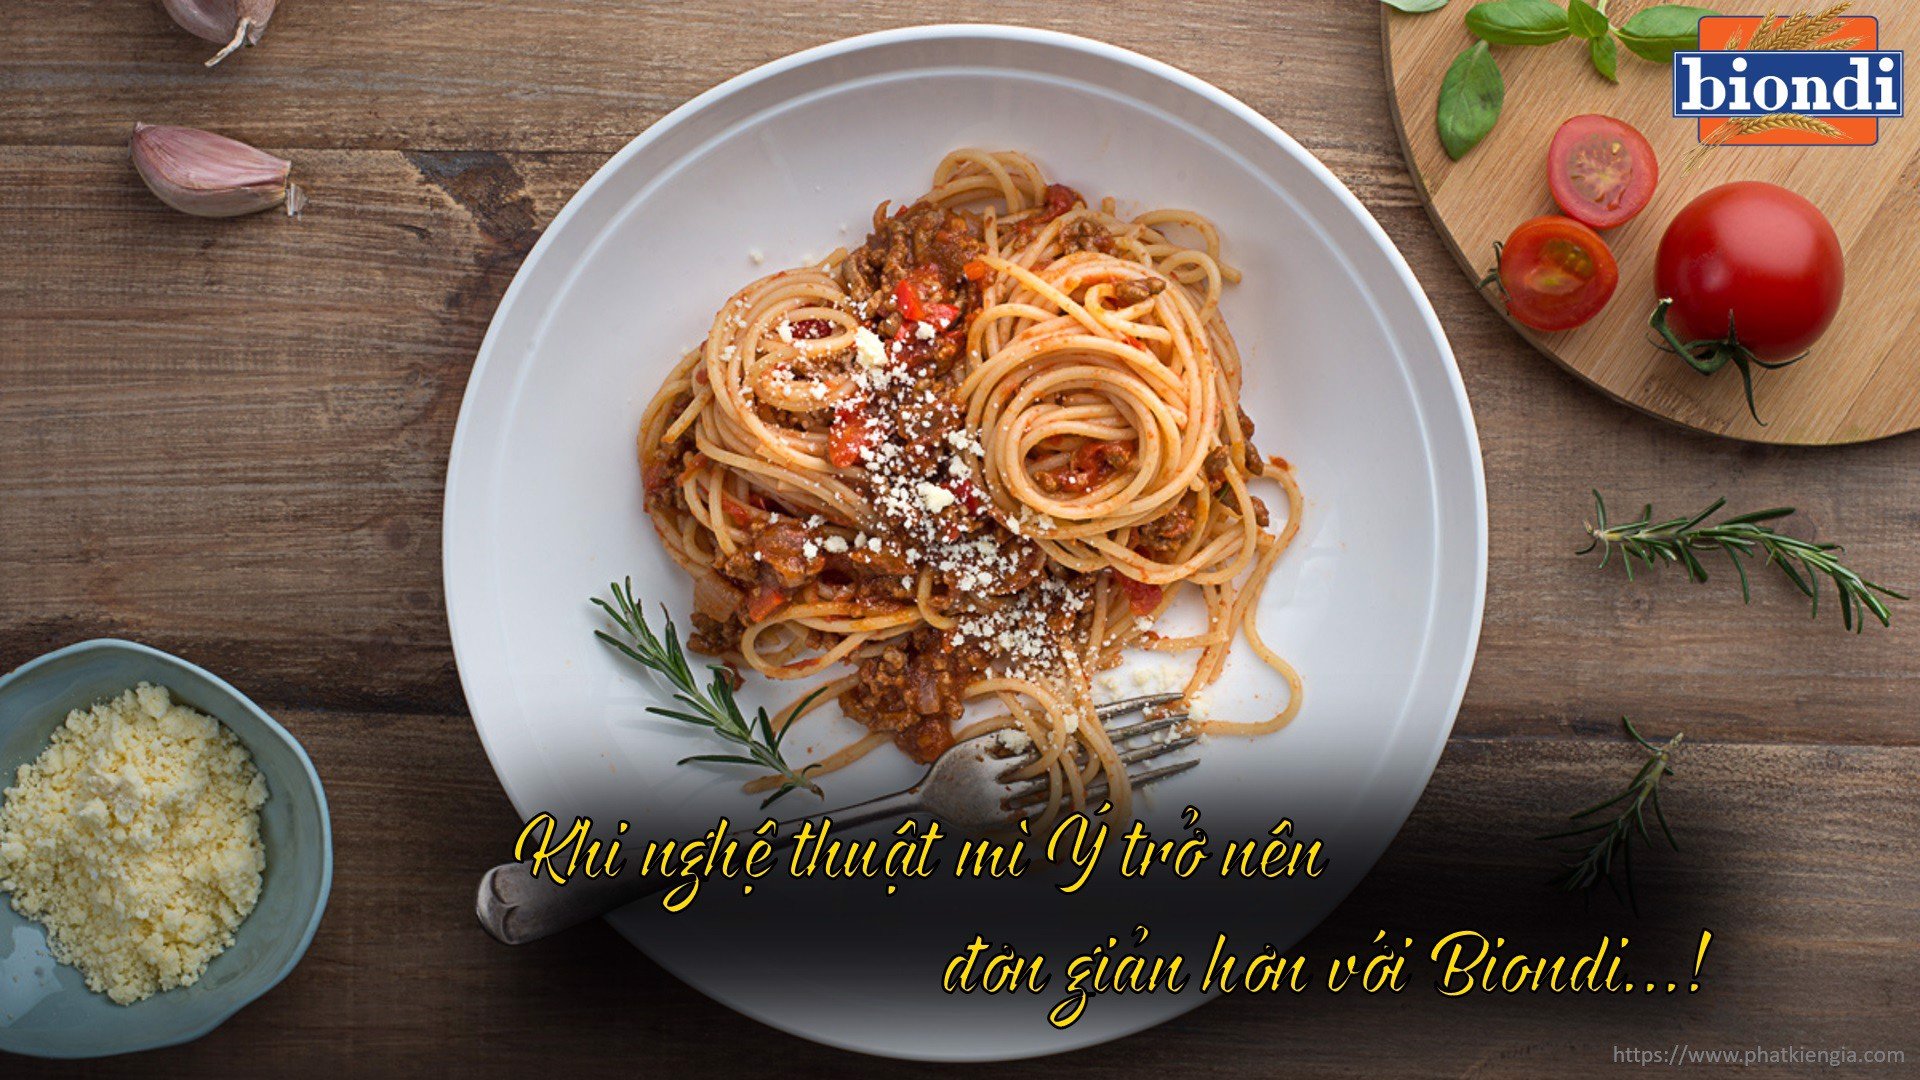 COMBO 2 Gói Mì Ý Spaghetti Số 4 Biondi 500g (Thương Hiệu Úc - SX Thái Lan)